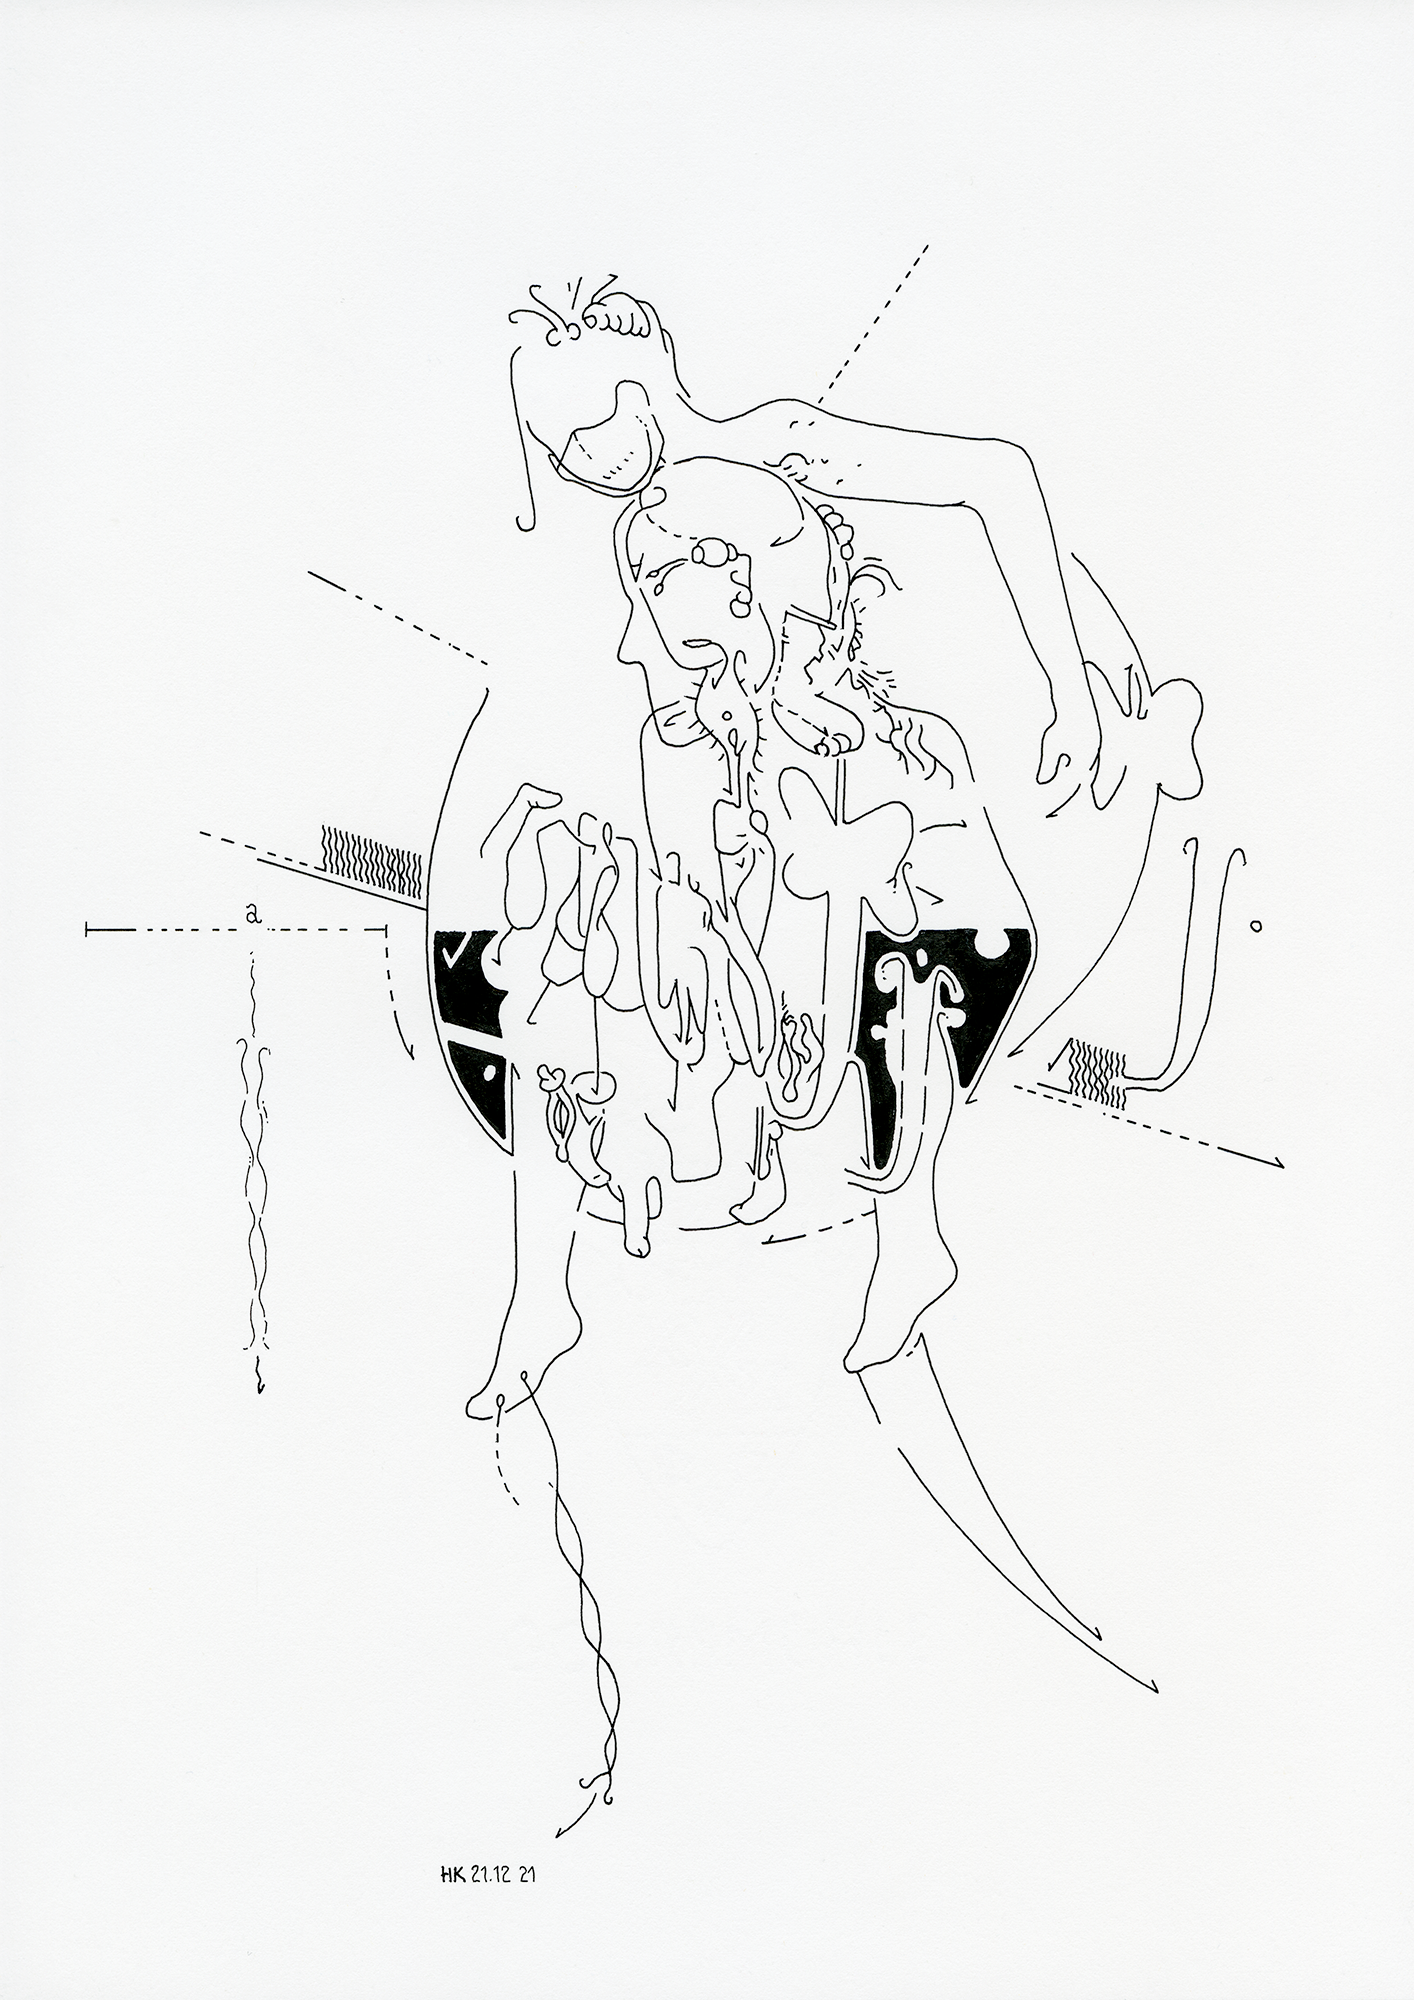 Hannes Kater: Tageszeichnung (Zeichnung/drawing) vom 21.12.2021 (1414 x 2000 Pixel)